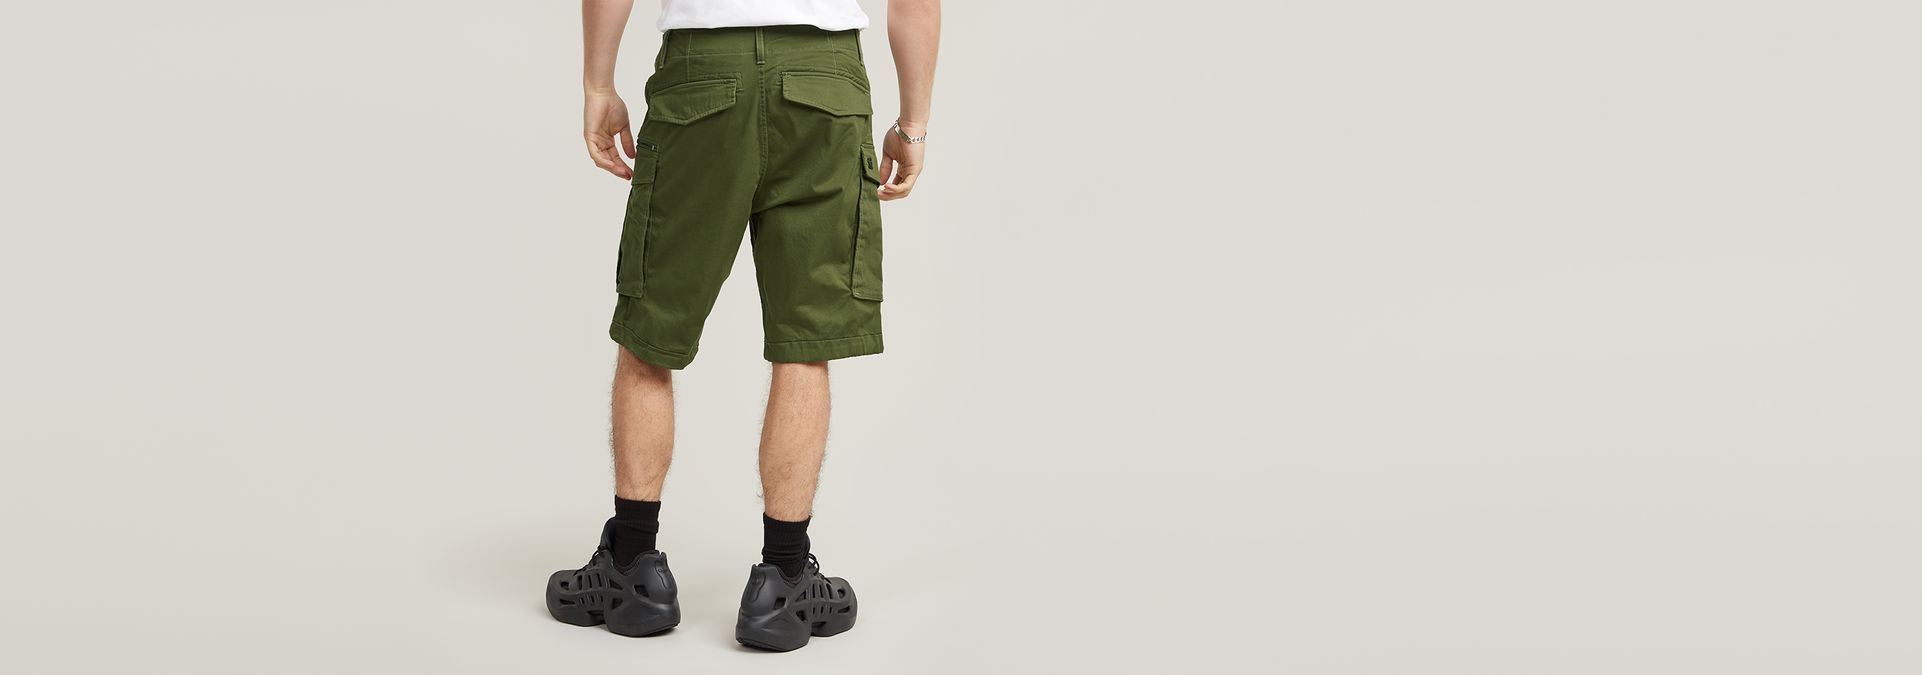 mens shorts green